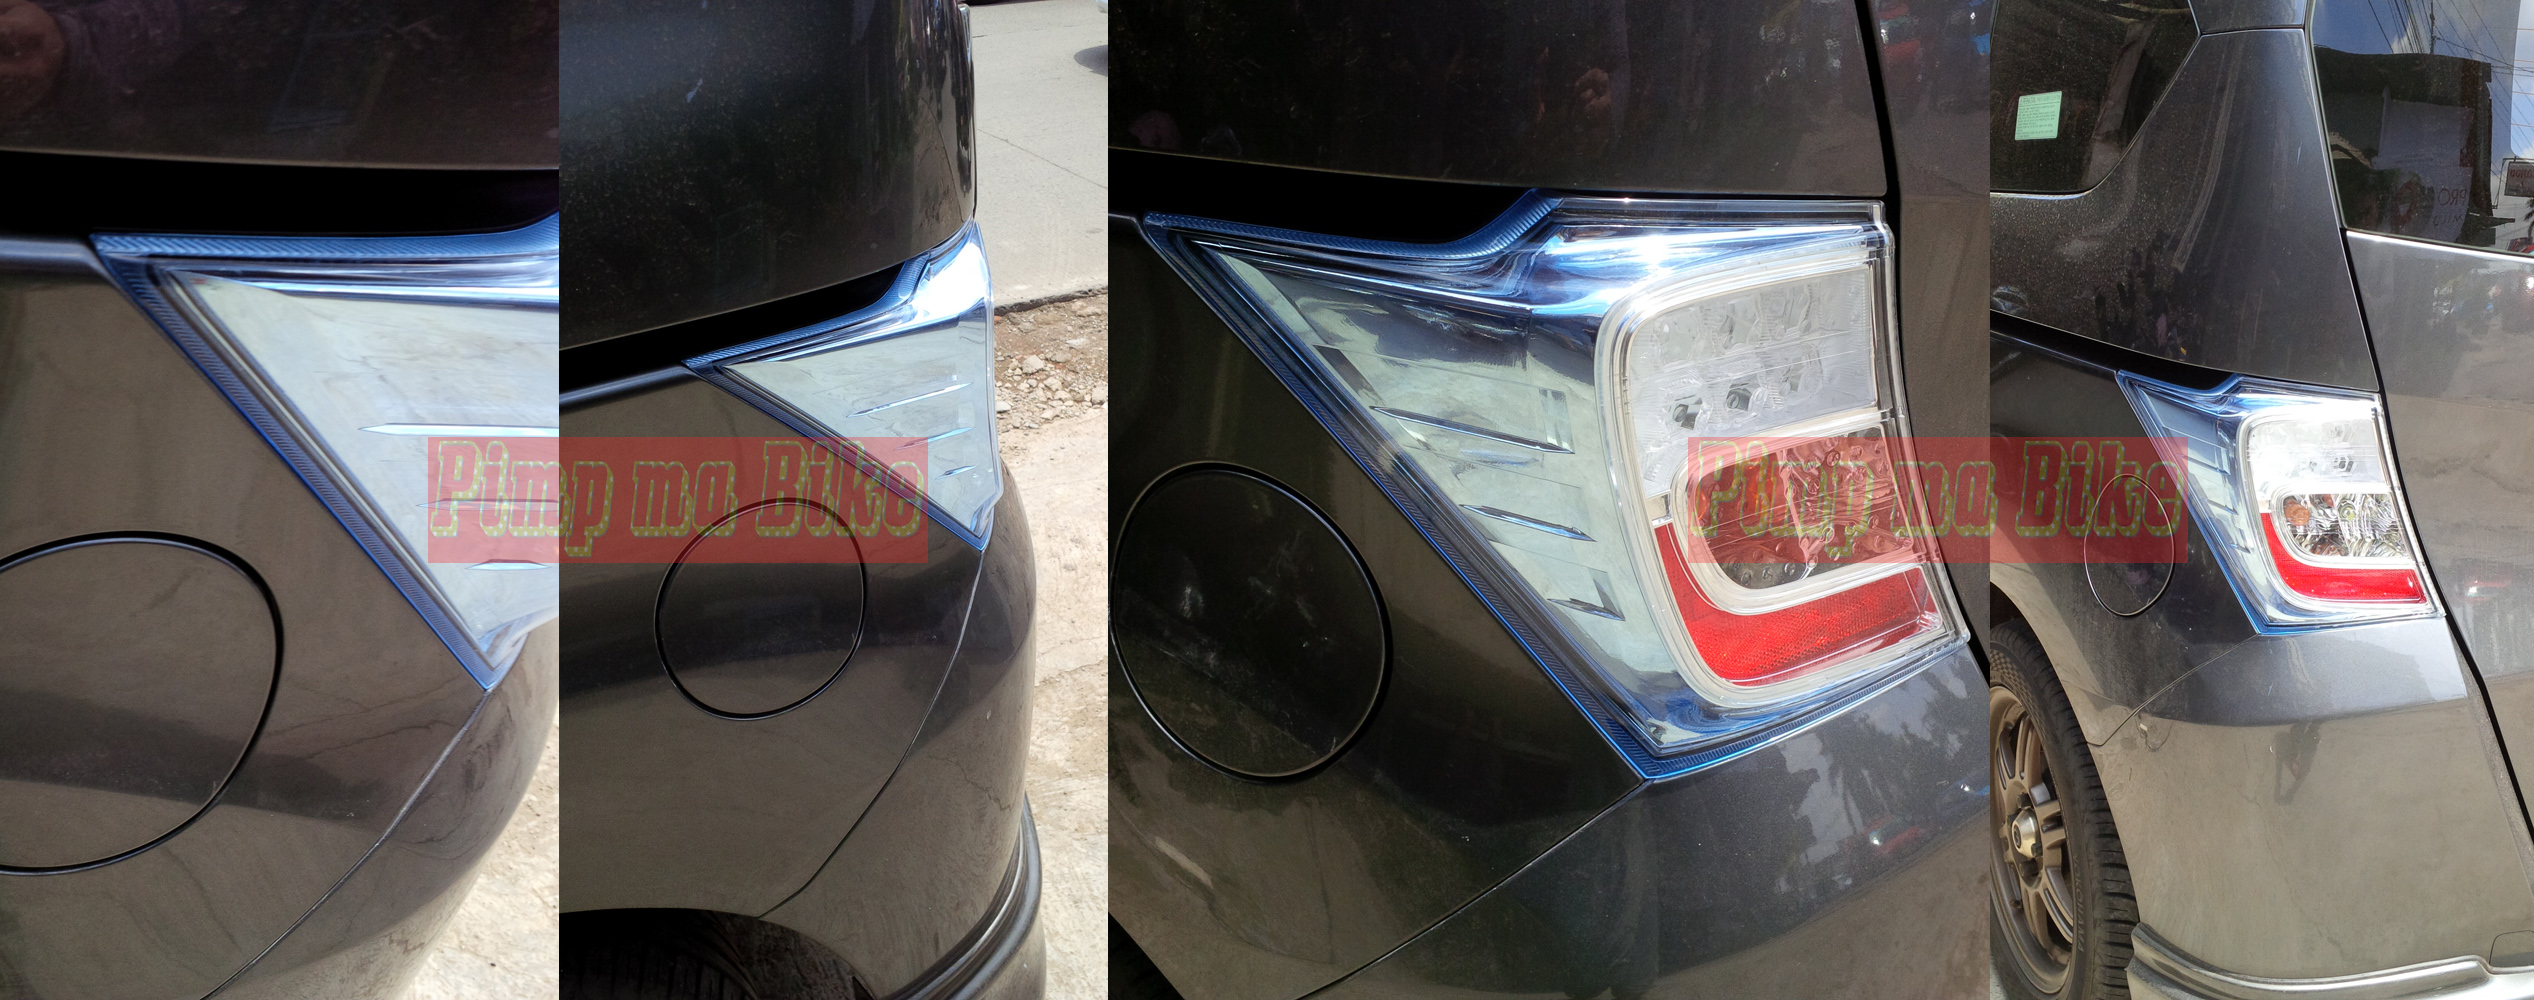 Modif Lampu Mobil Dengan Stiker Terbaru  Sobat Modifikasi